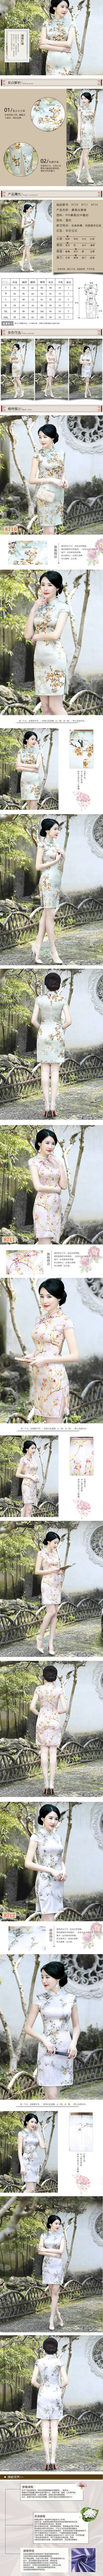 淘宝美工庞博旗袍中国风古典美详情页设计作品